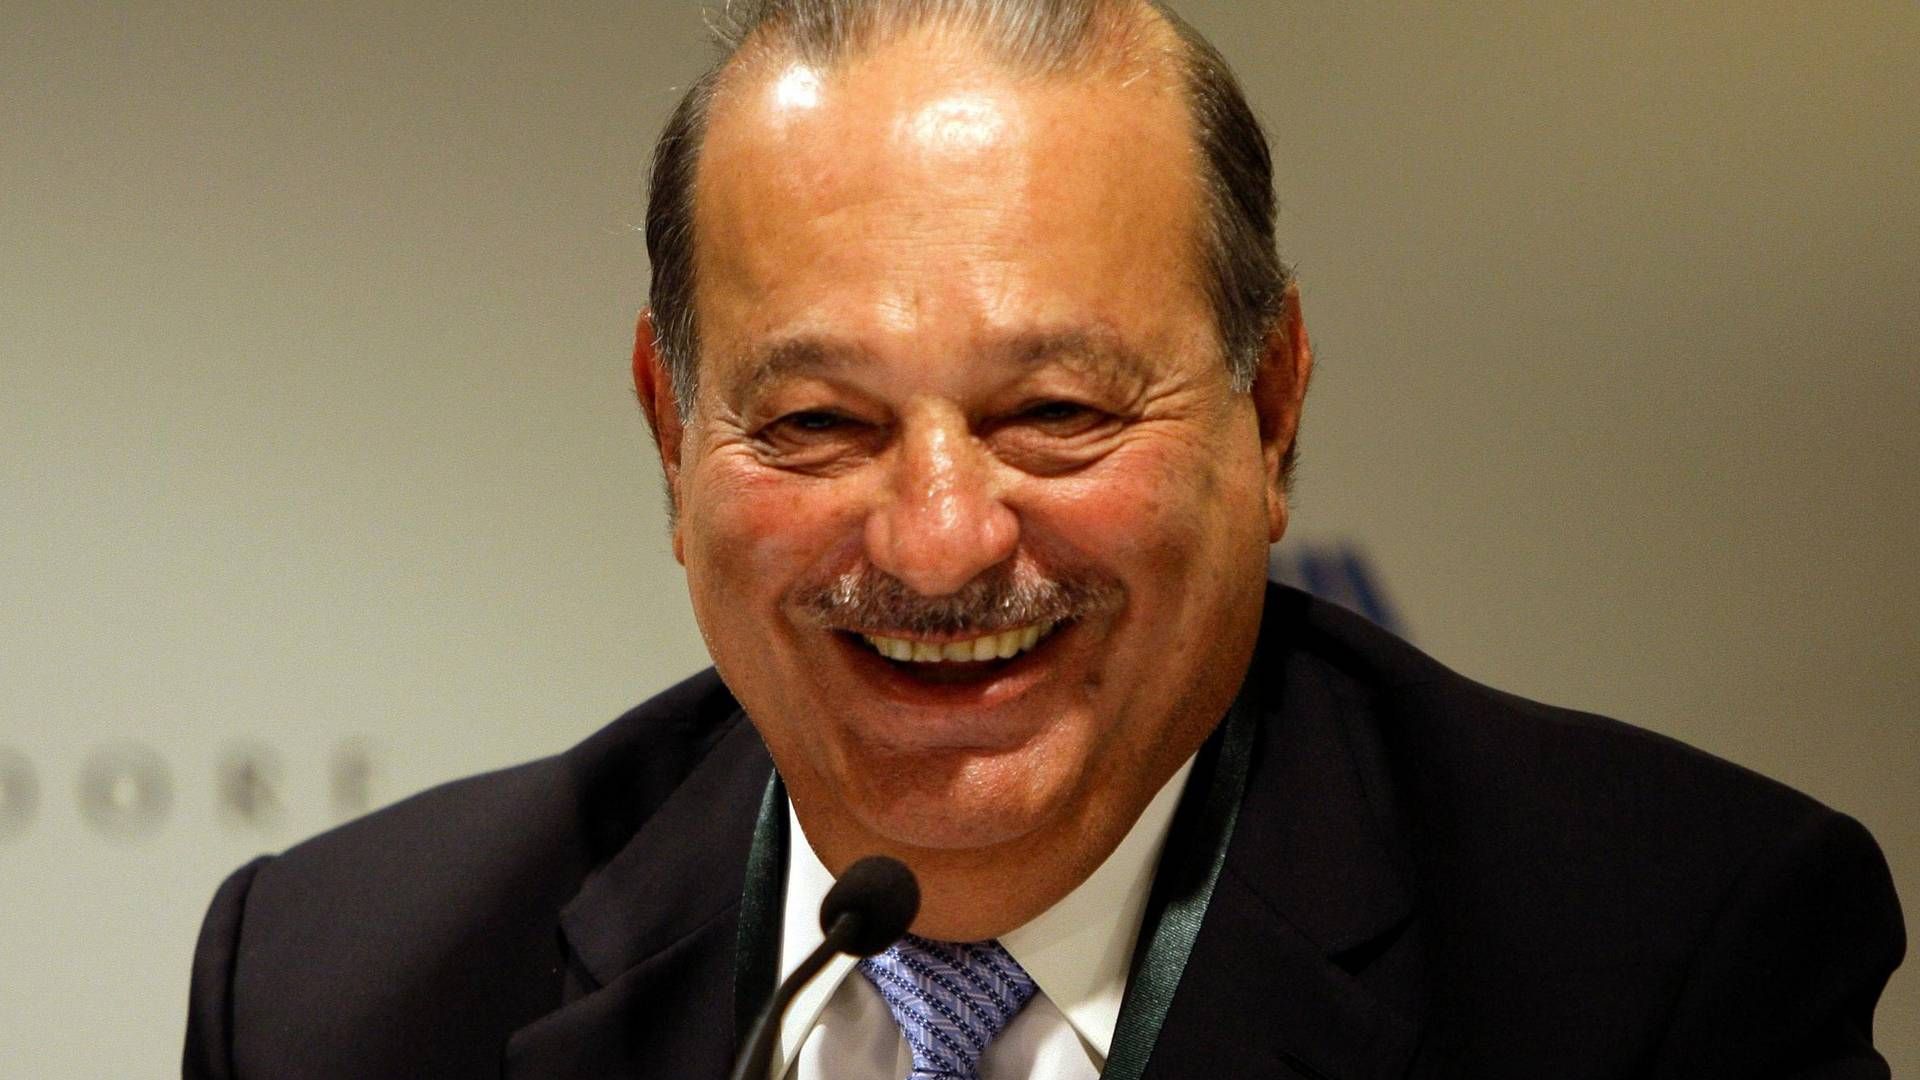 Carlos Slim har tjent store dele af sin formue gennem den latinamerikanske teleindustri. | Foto: JEREMY PIPER/AP/POLFOTO/ARKIV